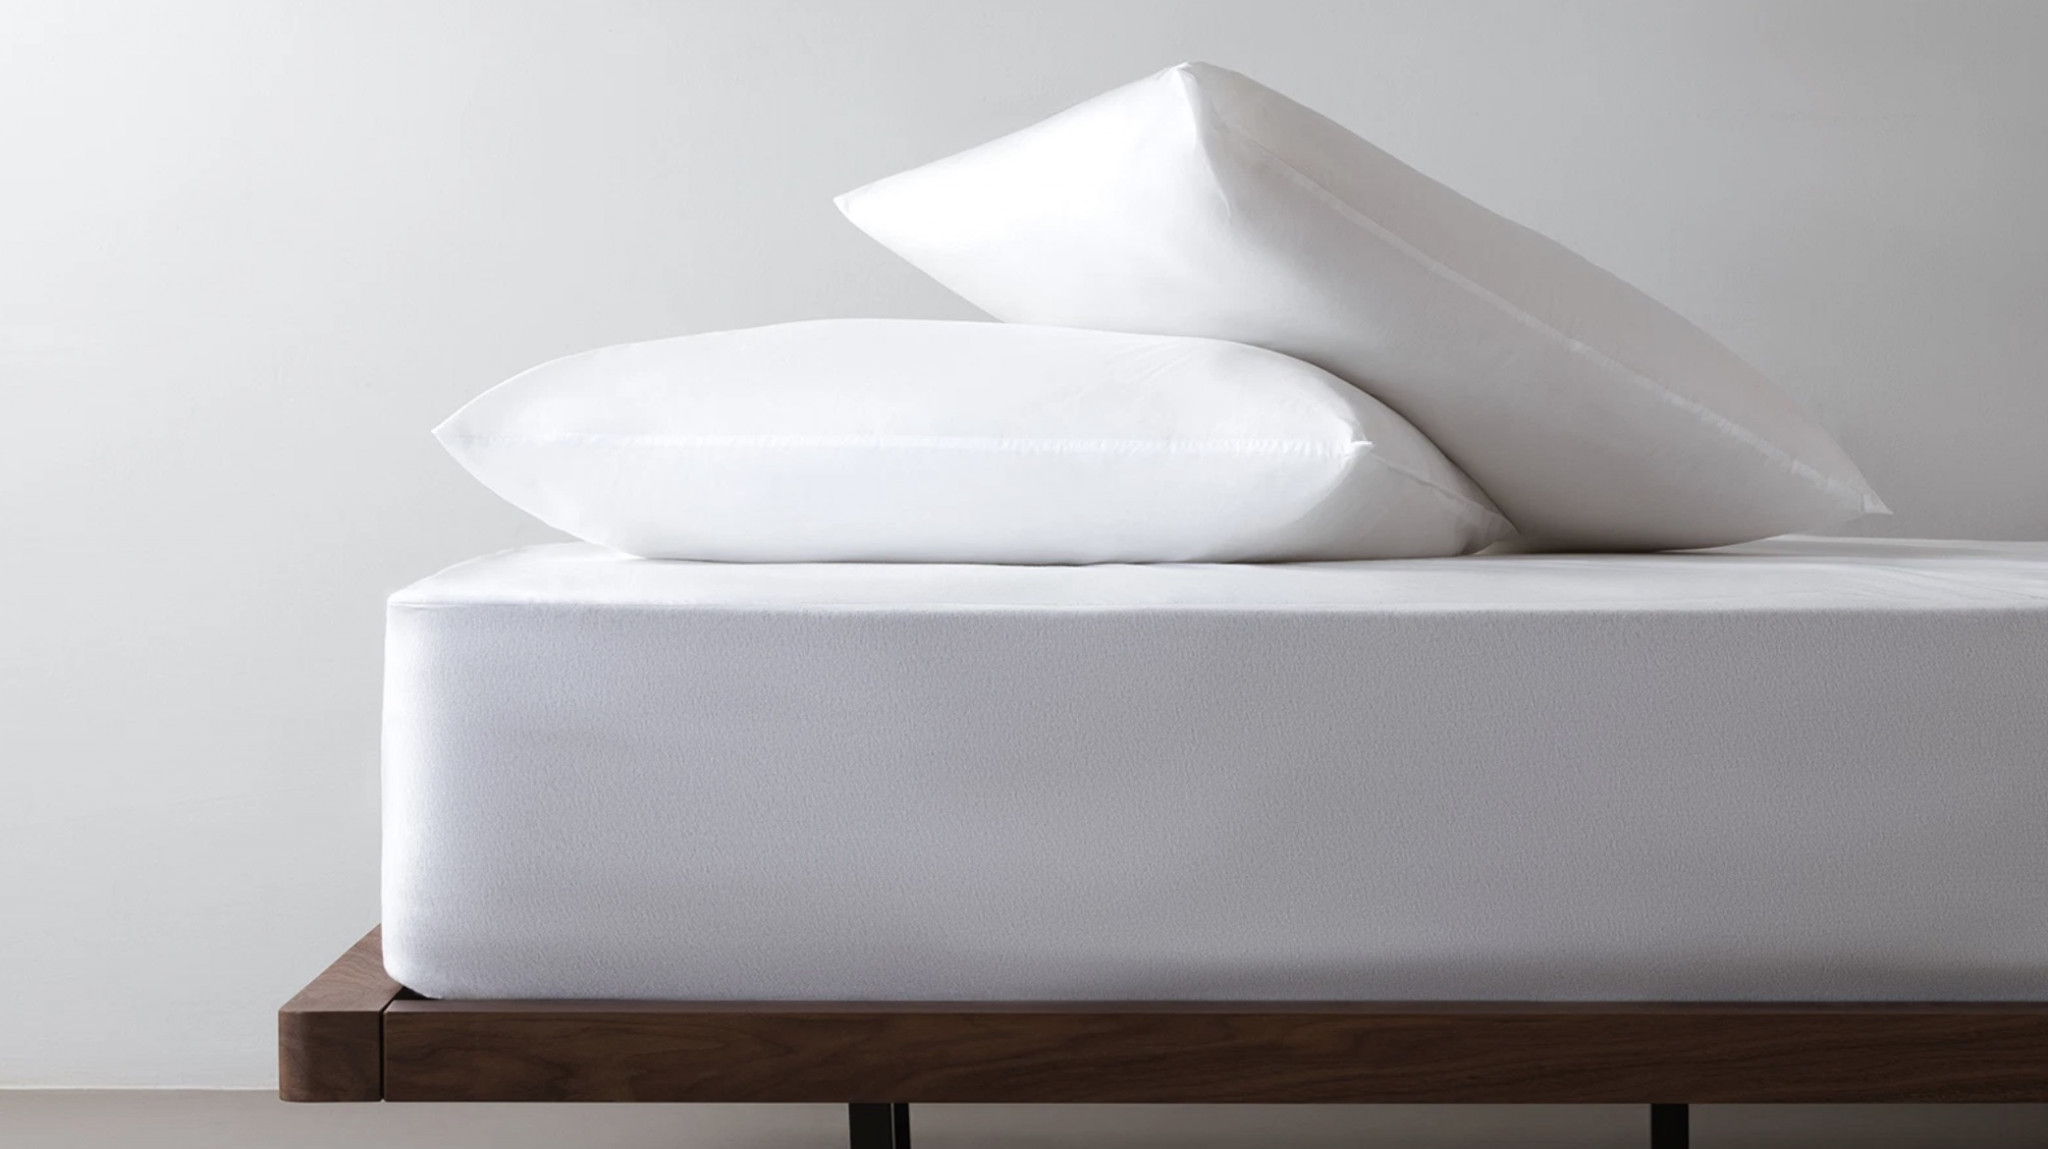 Best ways to keep your mattress clean